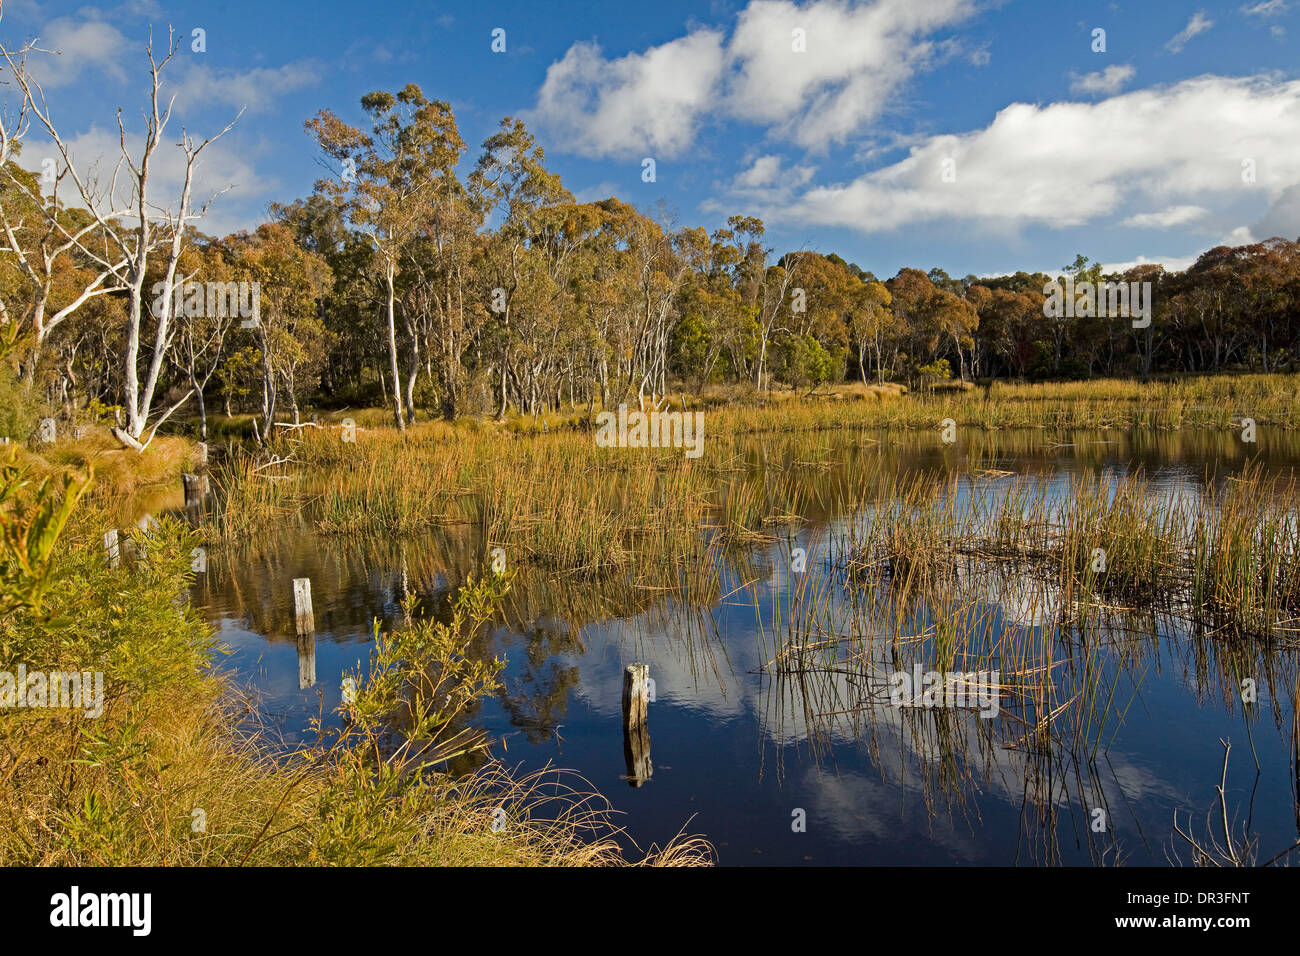 Spettacolare paesaggio boscoso e lago con il cielo blu e nuvole riflettono in acque tranquille vicino Emmaville e Glen Innes NSW Aust Foto Stock